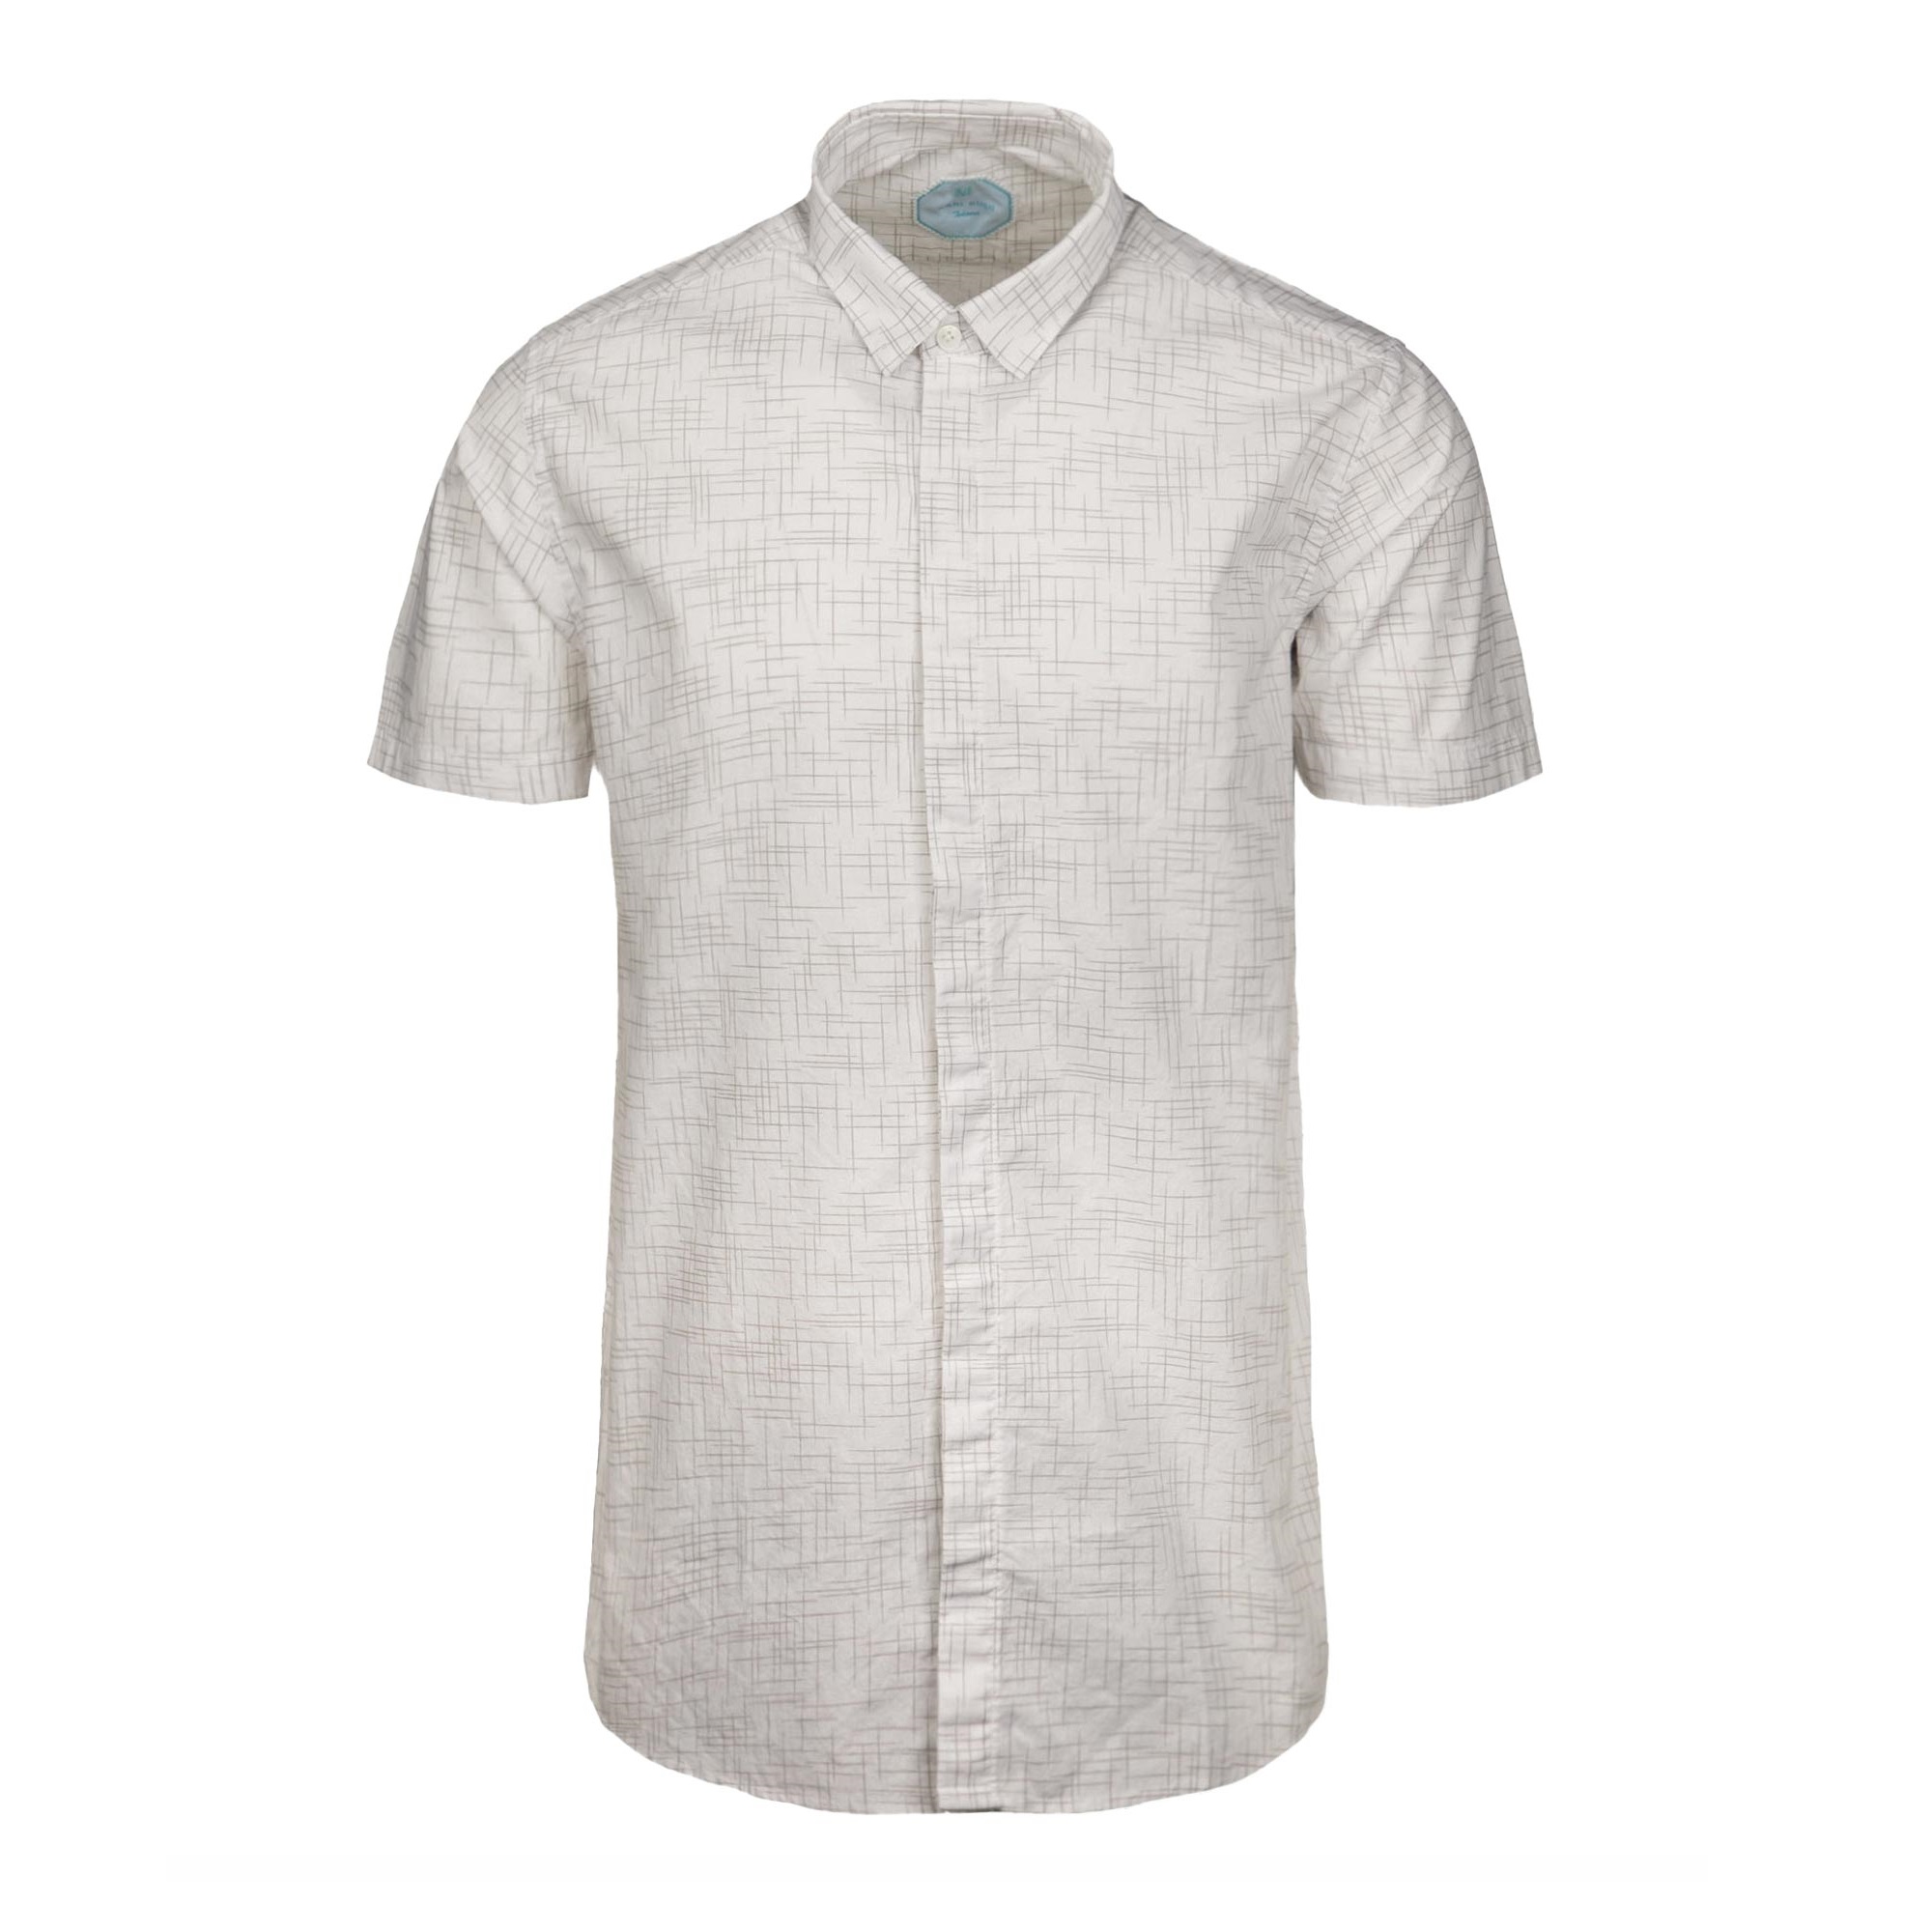 نکته خرید - قیمت روز پیراهن آستین کوتاه مردانه مدل SB-4044 خرید